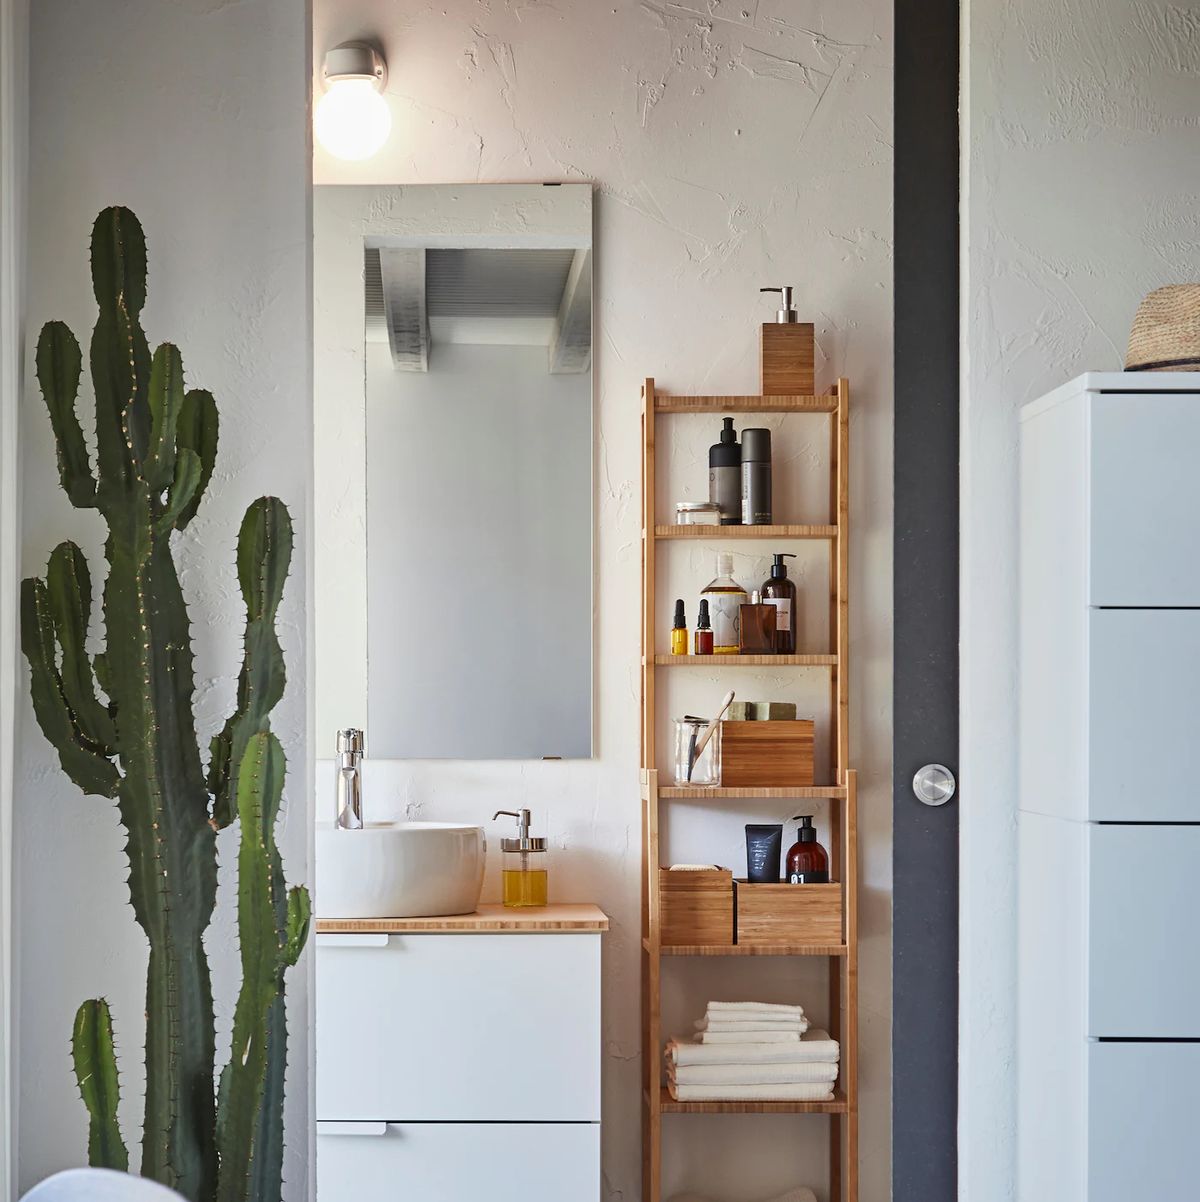 Secrets of a stylist: The bathroom shelf display - IKEA